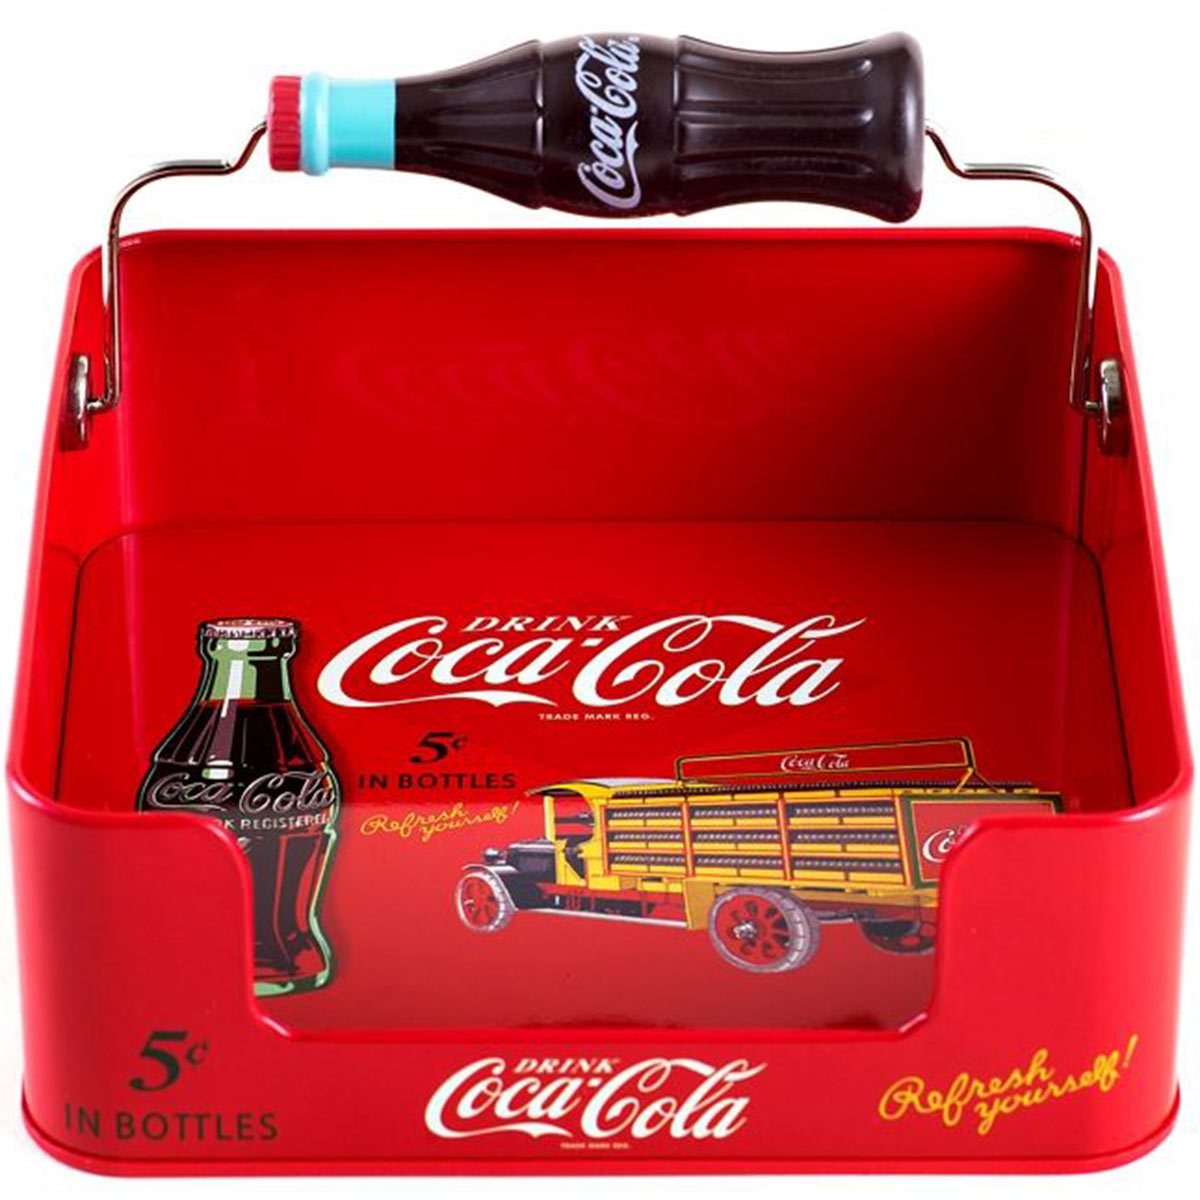 Coke Refresh Yourself Dispenser Ornament - Culbreth & Co.